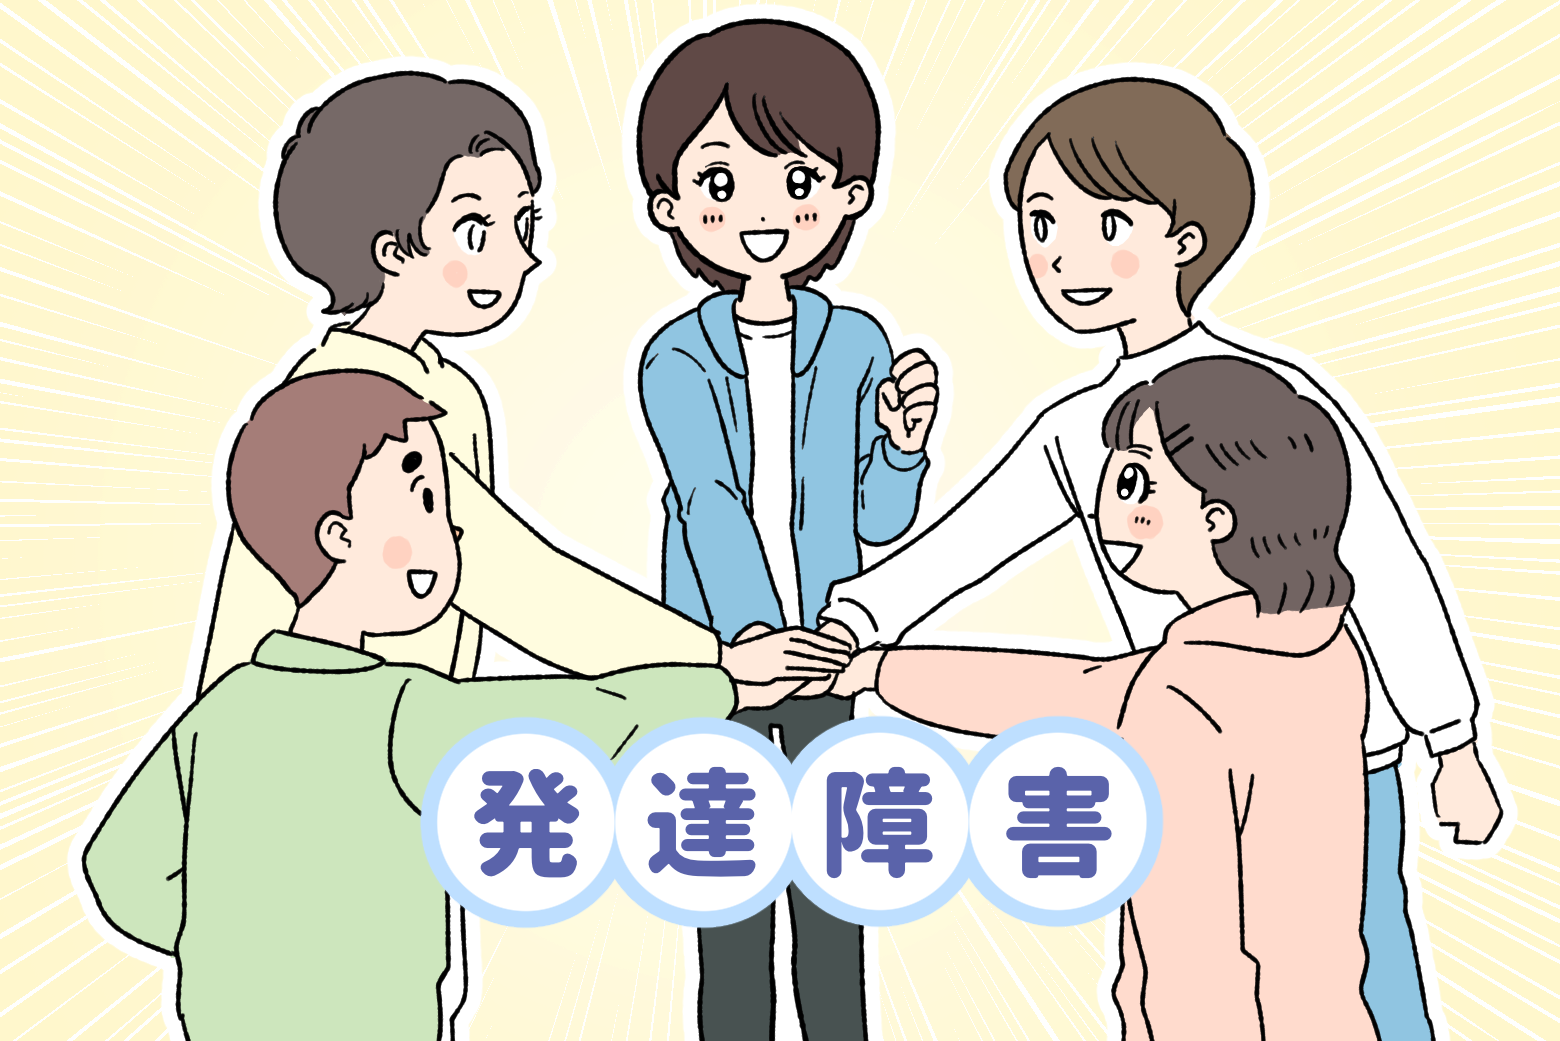 5人の男女が手を重ね合っている　中央に「発達障害」の文字